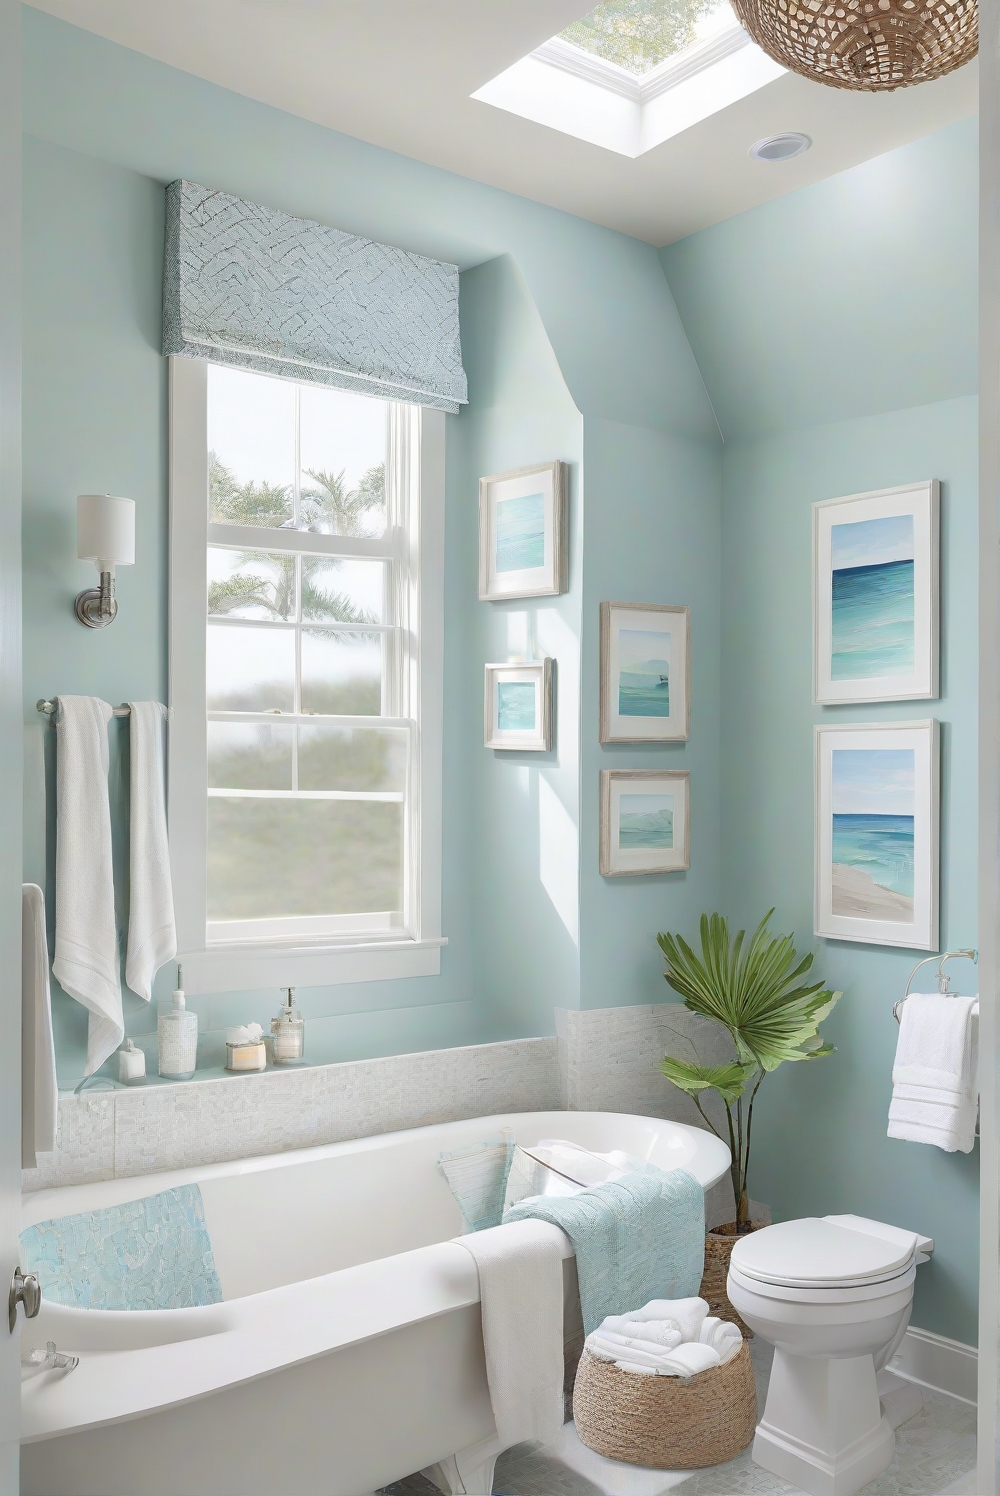 coastal bathroom decor, bathroom design ideas, turquoise bathroom decor, coastal interior design, coastal home decor, coastal paint colors, beach house decor